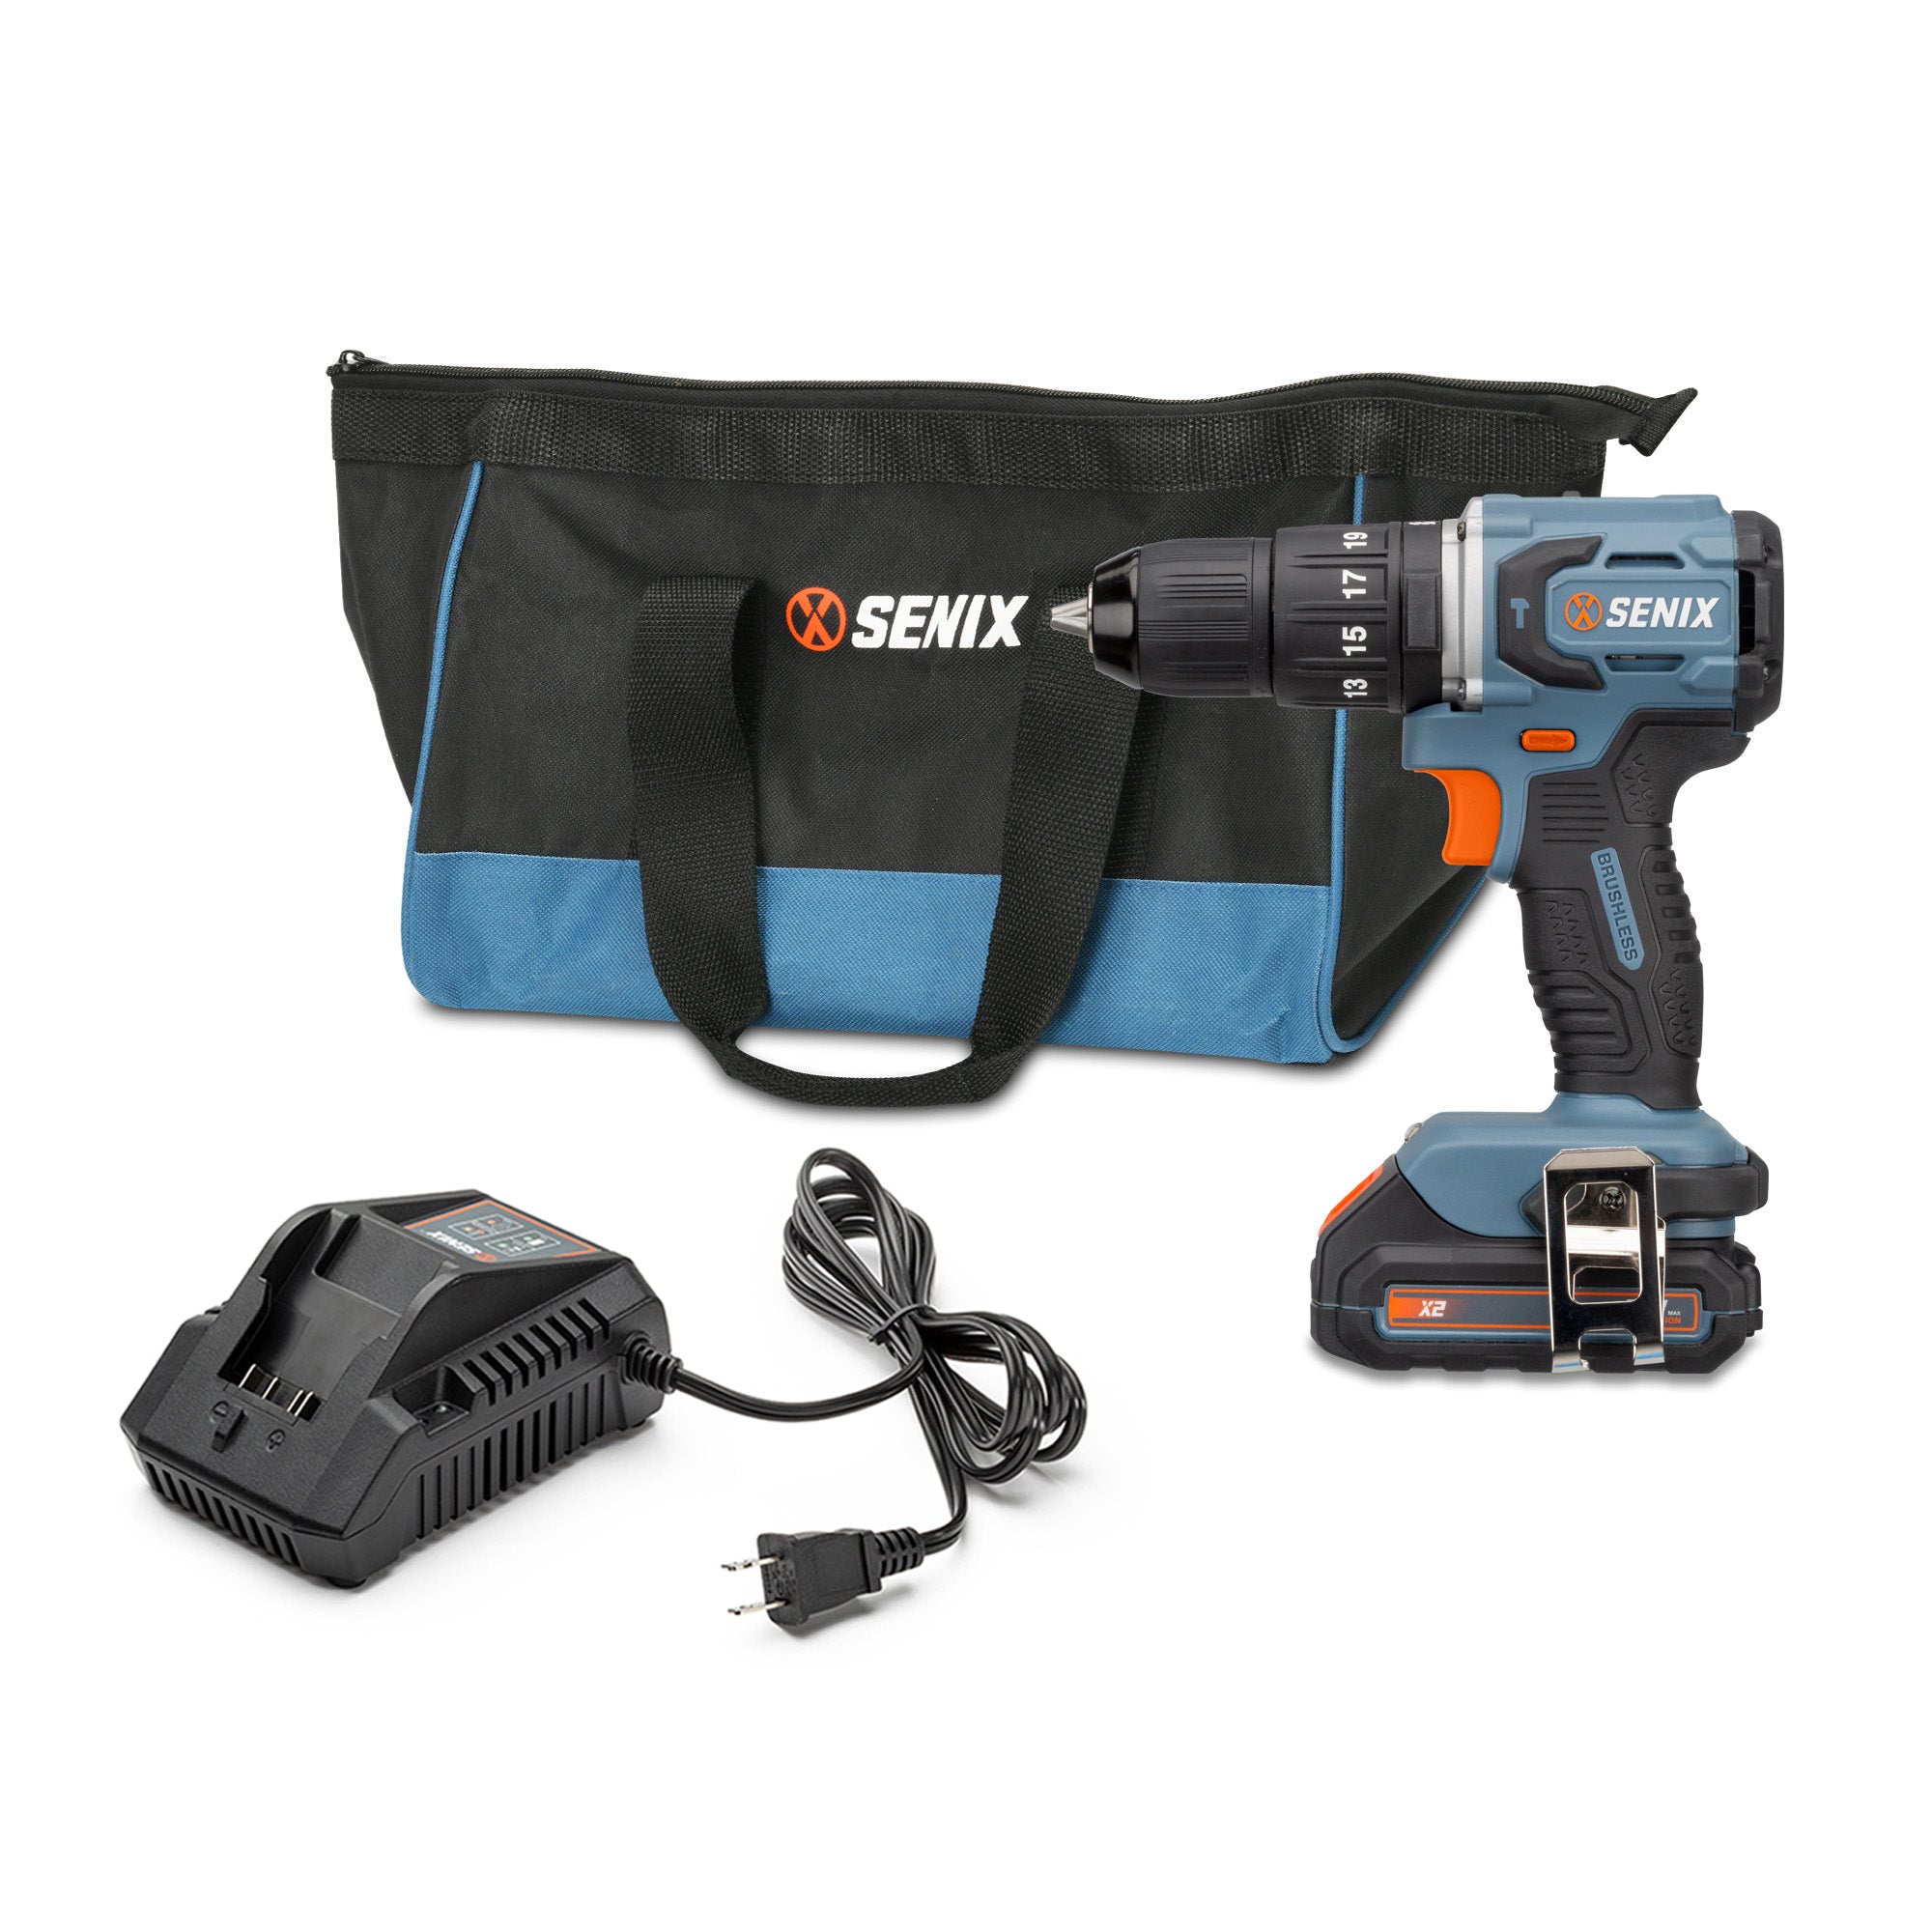 Senix S2K2B2-01 20 Volt Max 2-Tool Cordless Brushless Combo Kit, 1/2-I